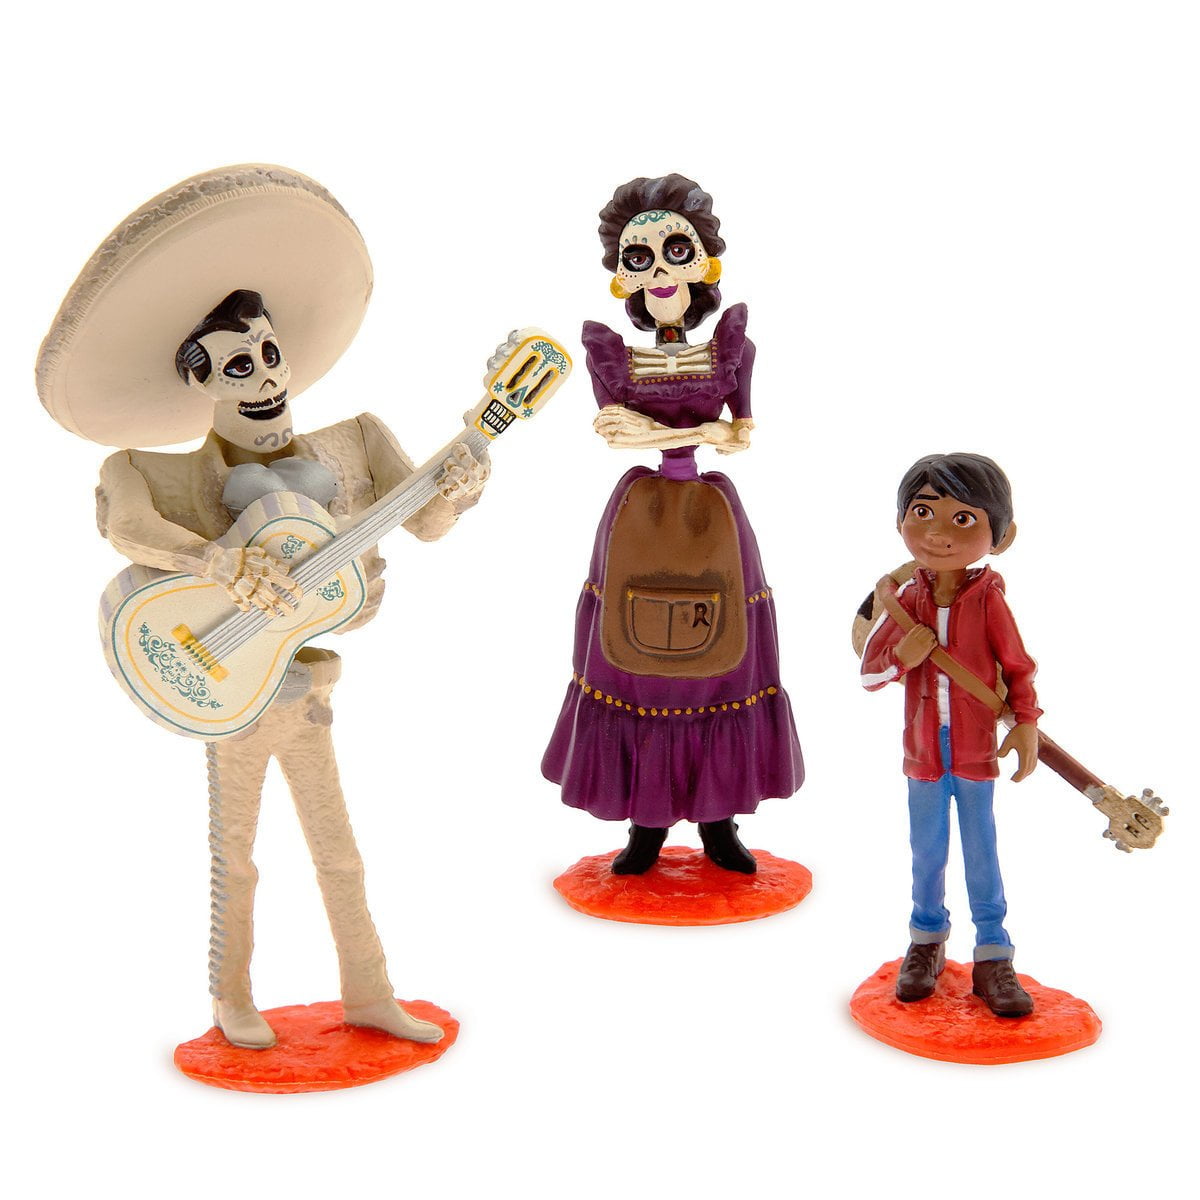 Disney Pixar Coco Deluxe Figurine Set Of Figures 8 Figures New Playset Cake Top